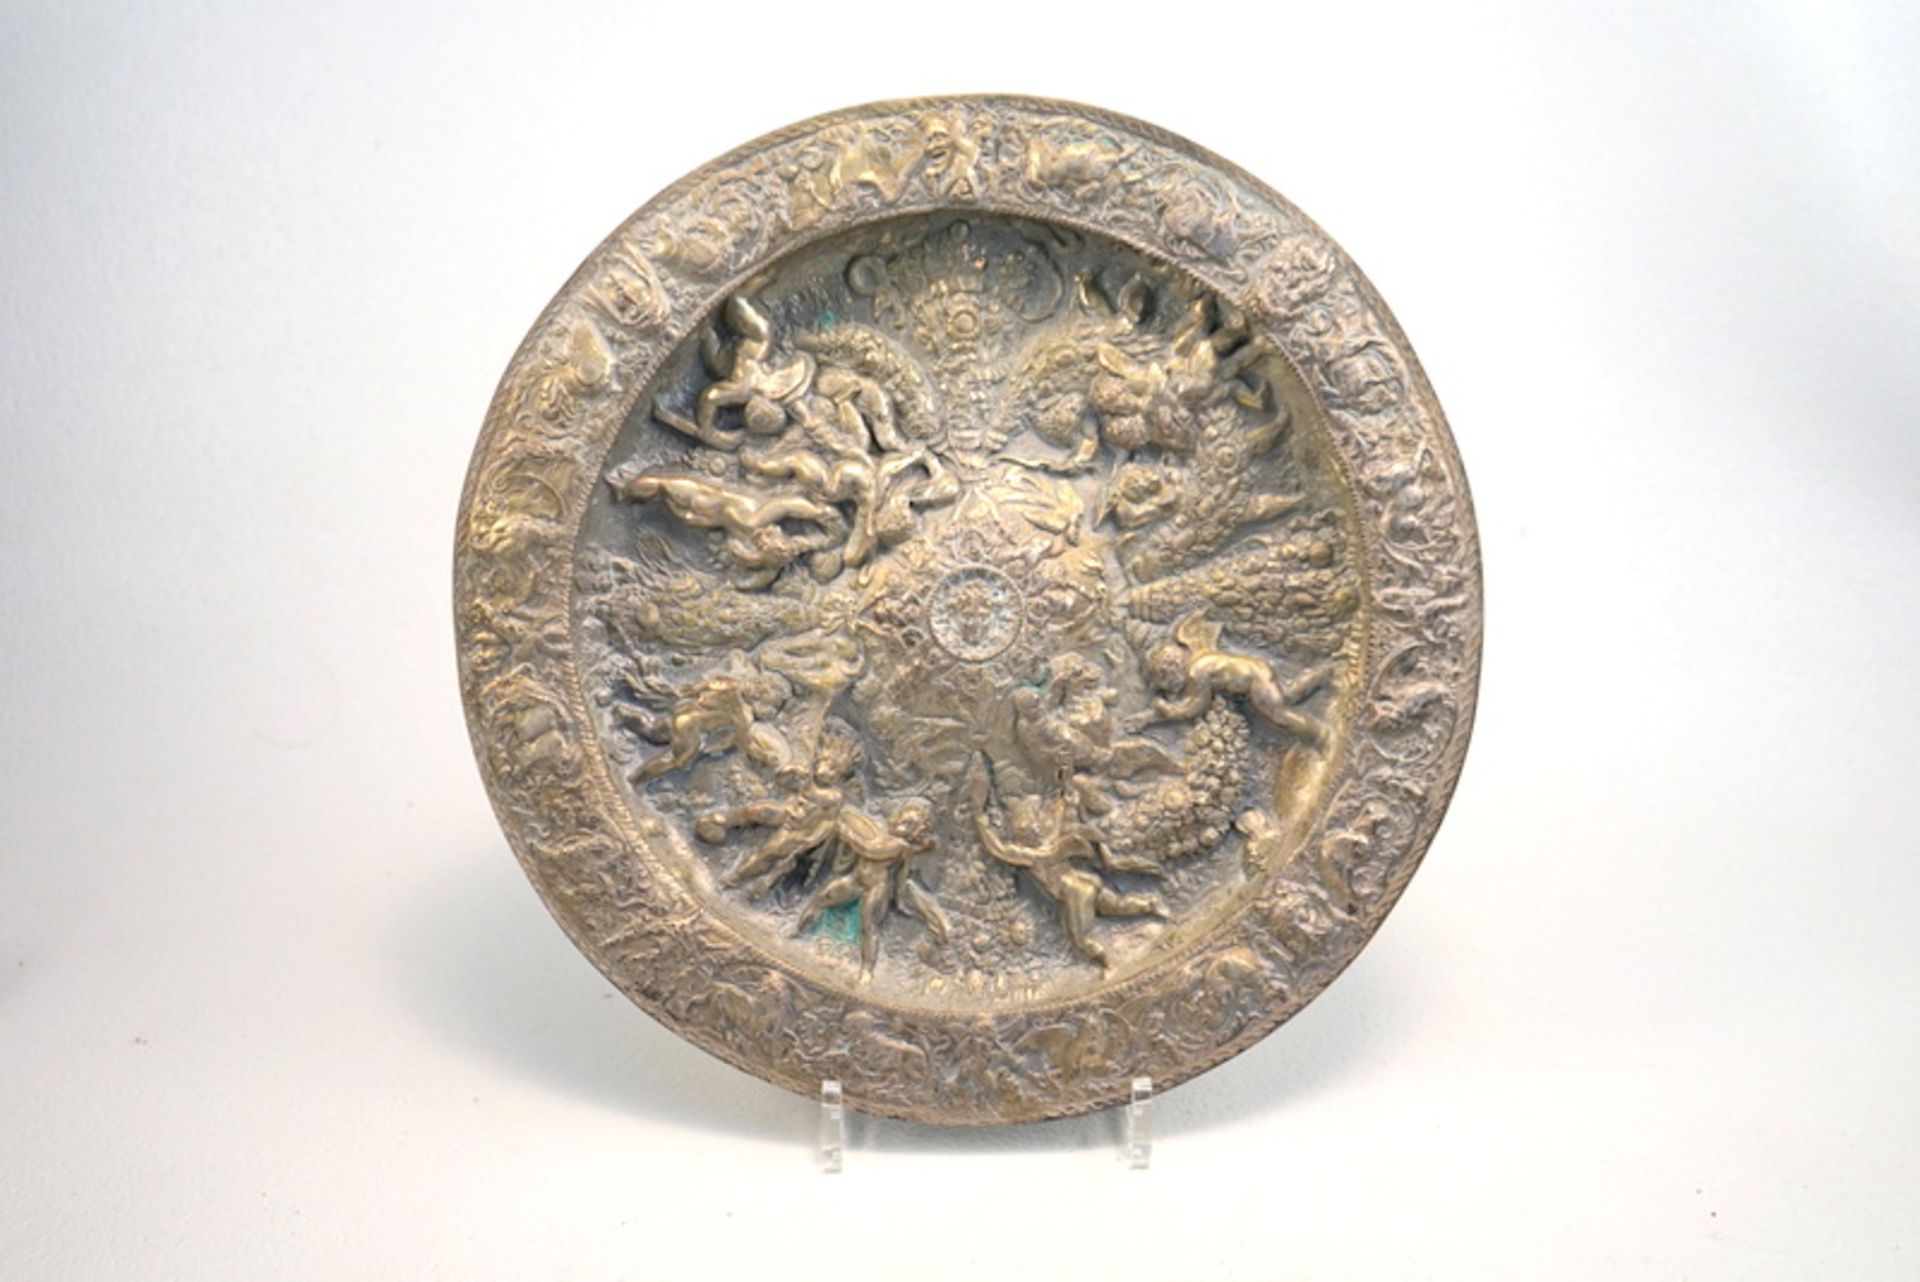 Reliefteller nach barockem Vorbild,Galvanoplastik, 34cm Durchmesser, Kupfer versilbert, Gewicht